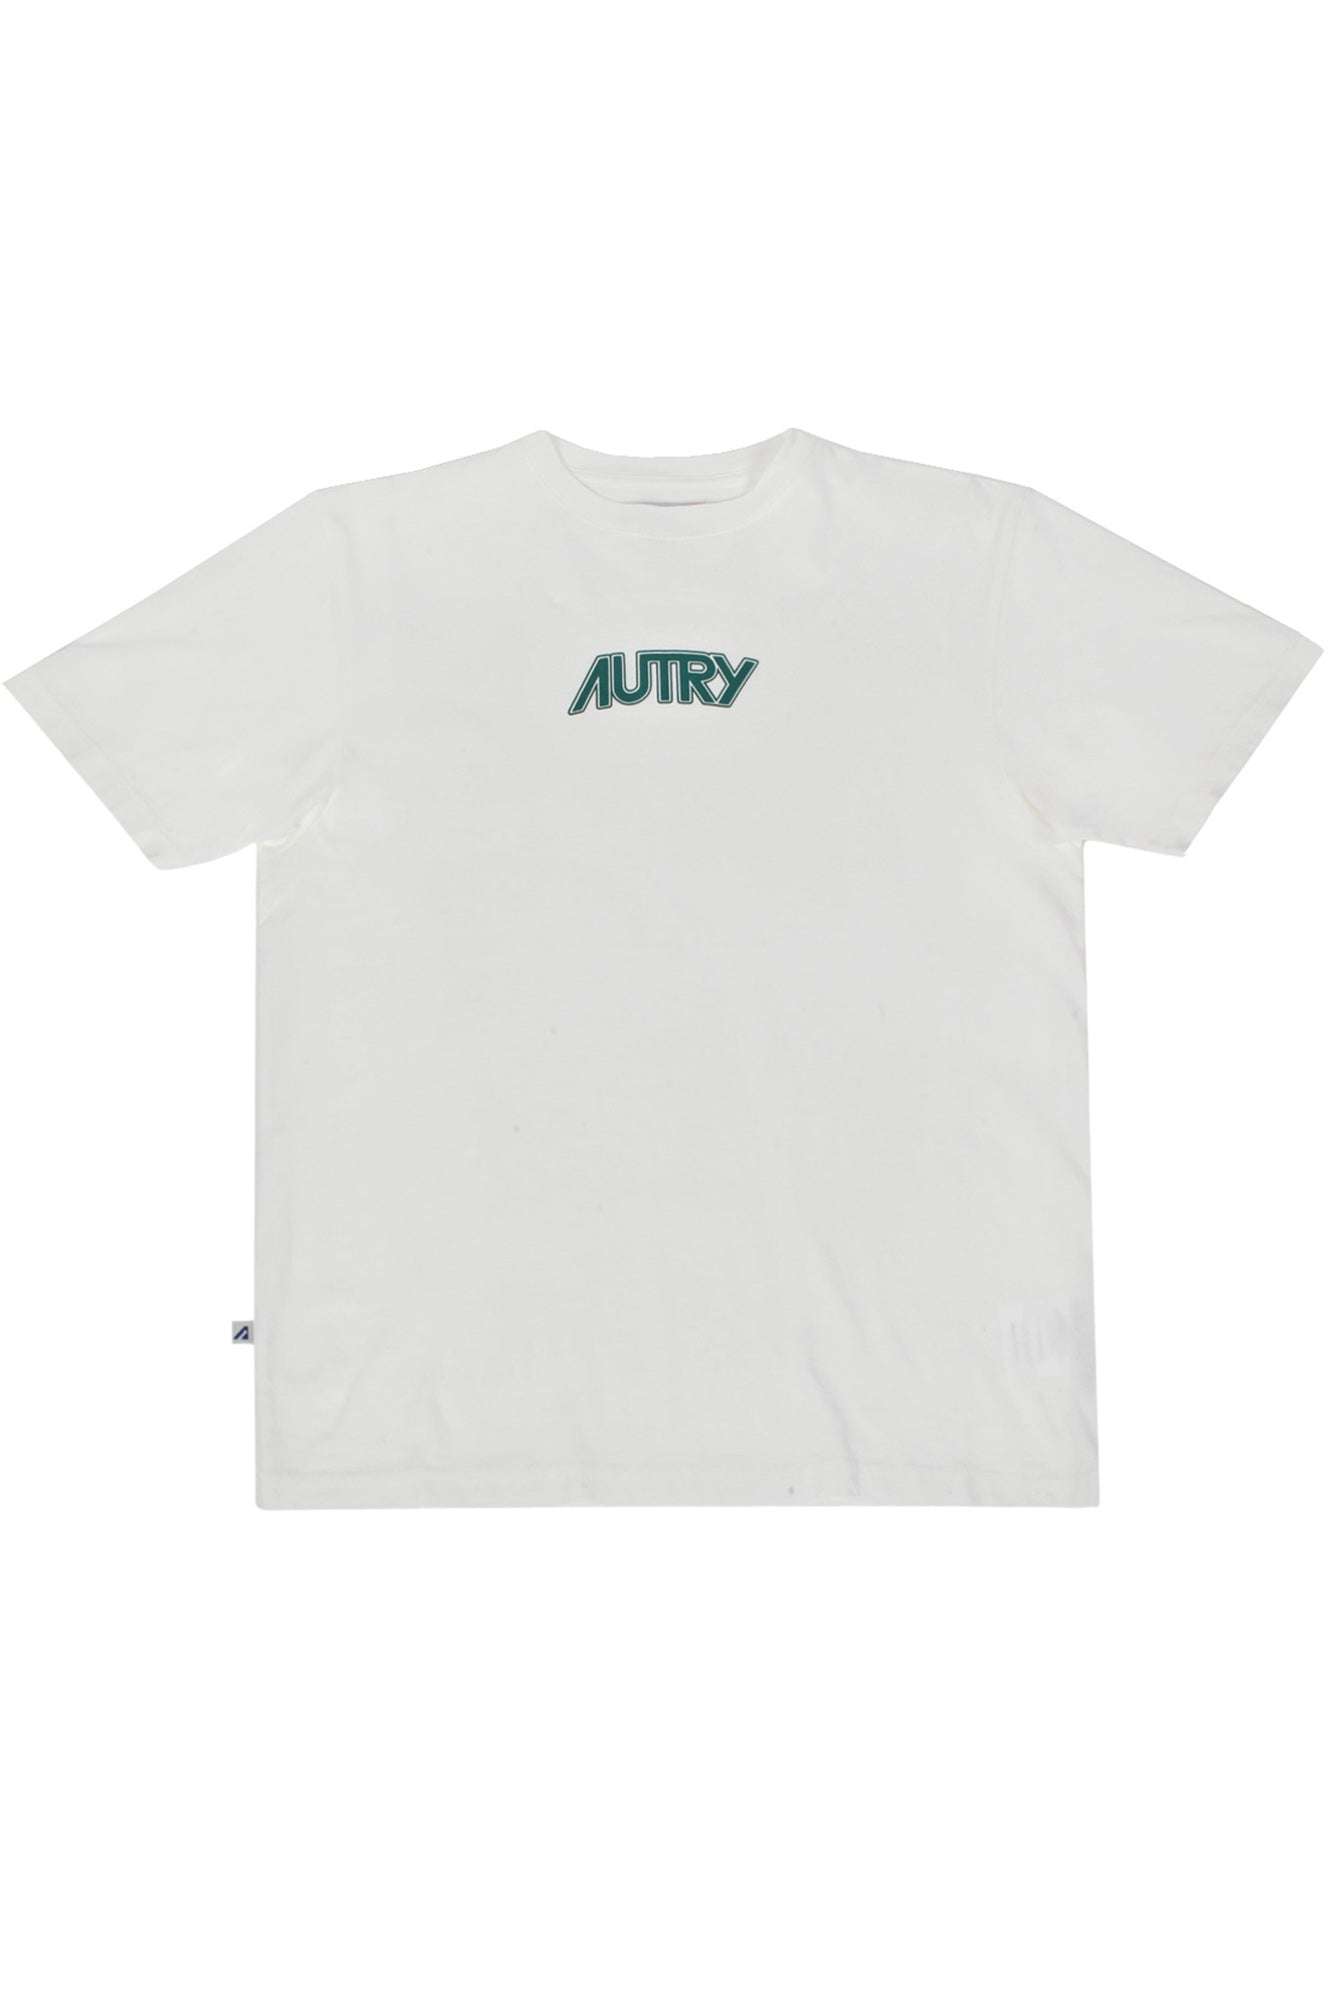 Autry - T-shirt - 430055 - Panna